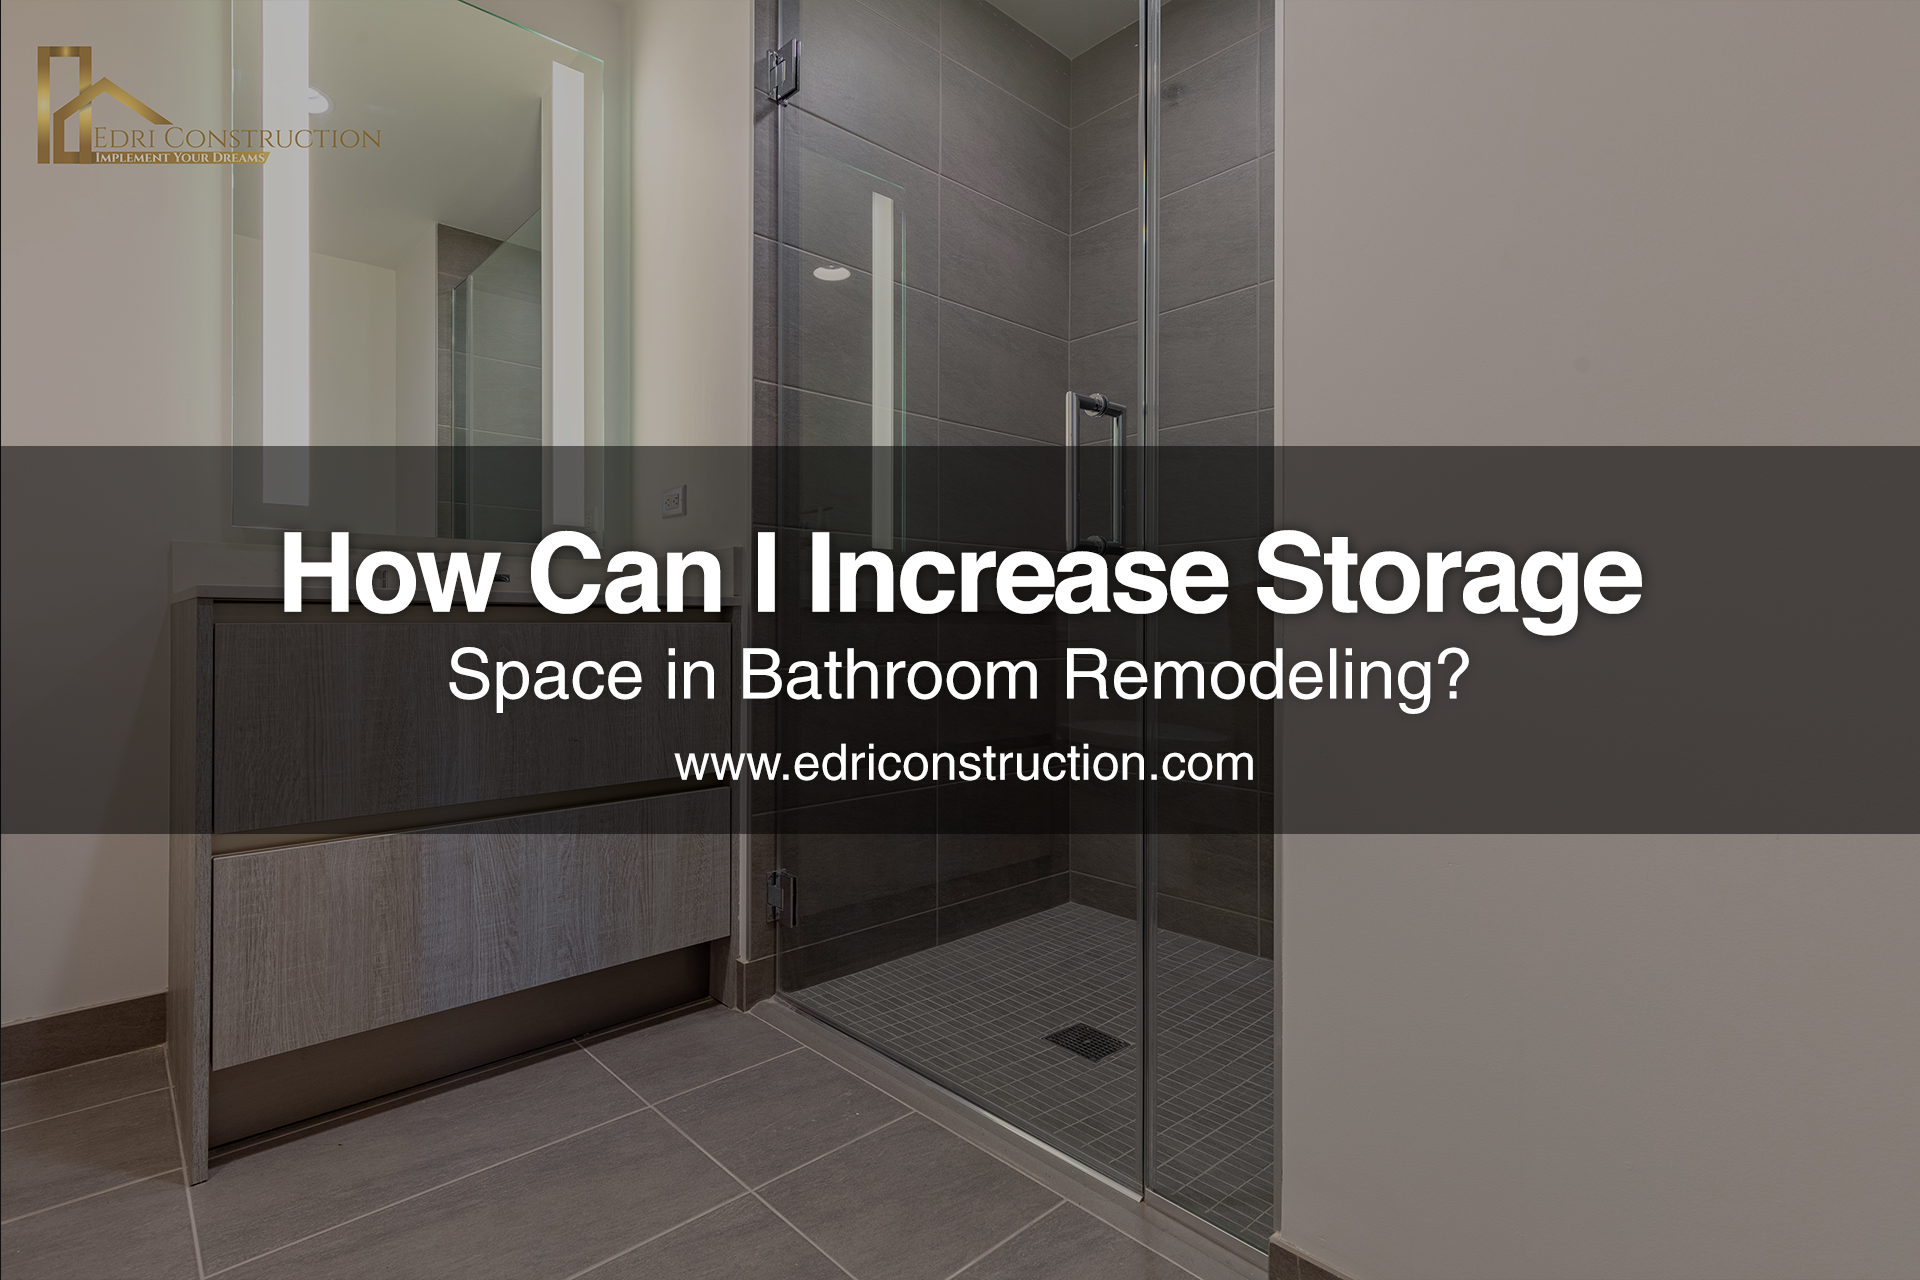 Increase Storage Space in Bathroom Remodeling